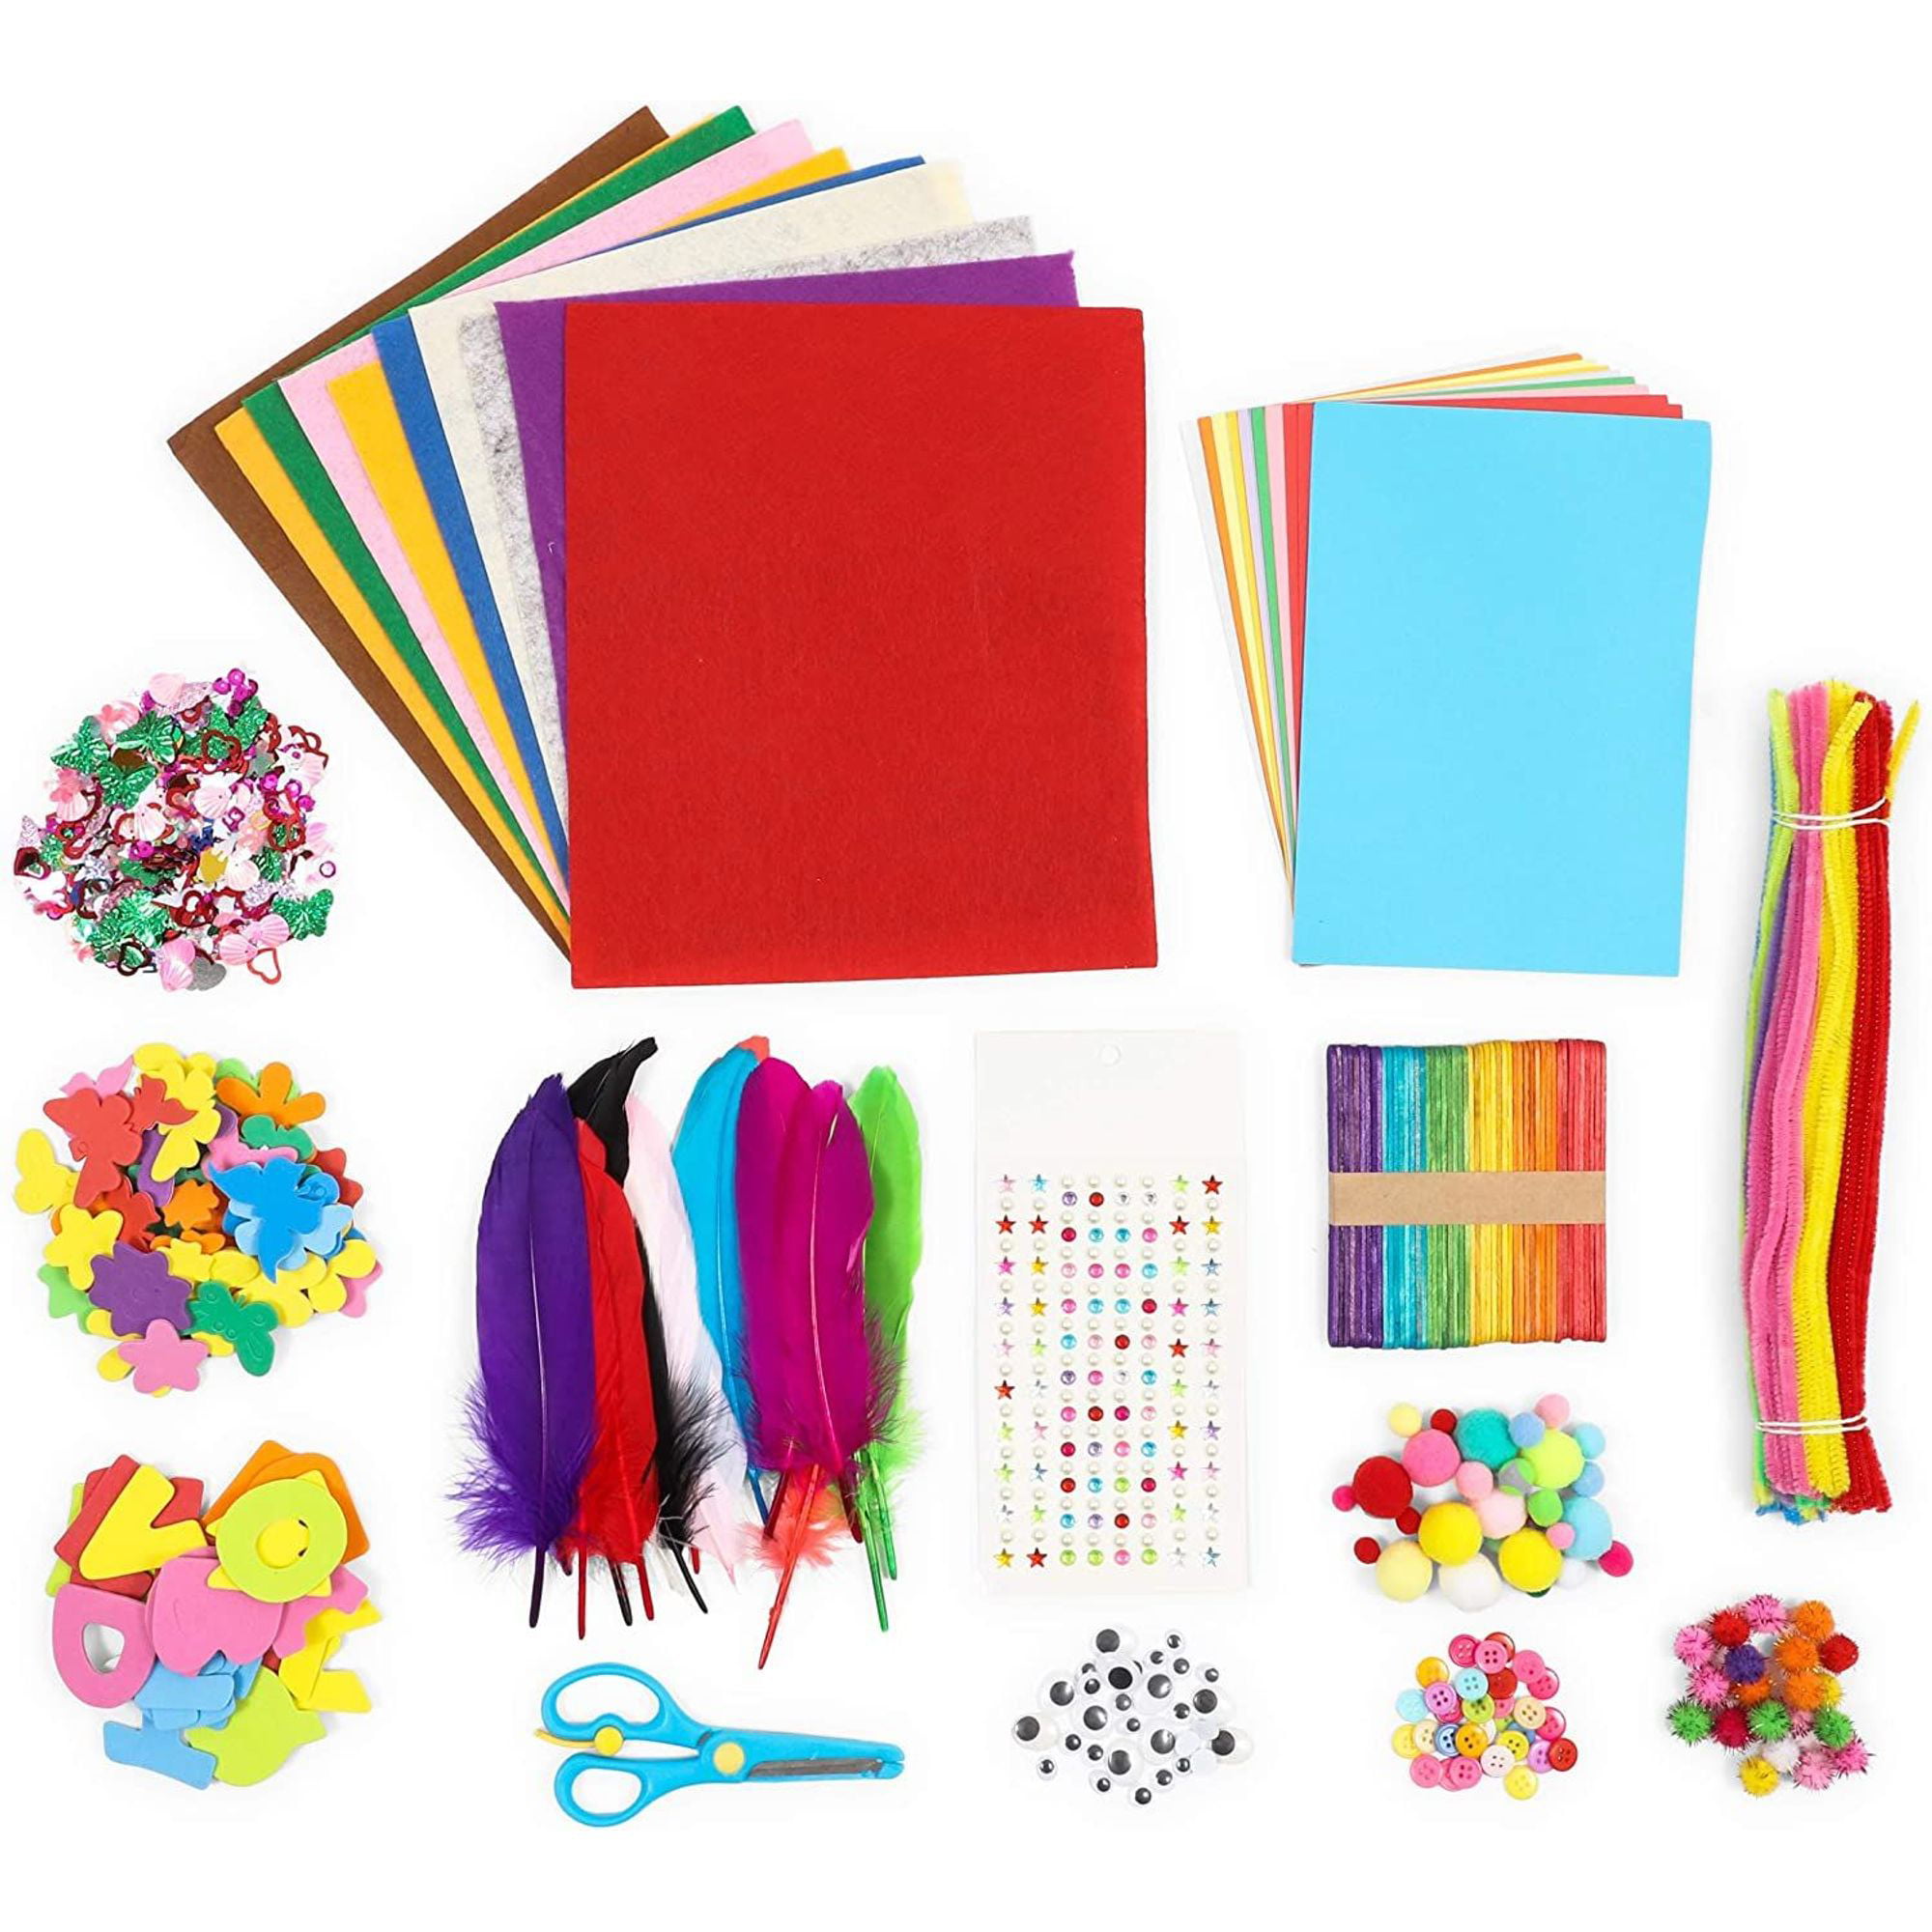 1000pcs Kids Art & Craft Supplies Assortment Set for School Projects